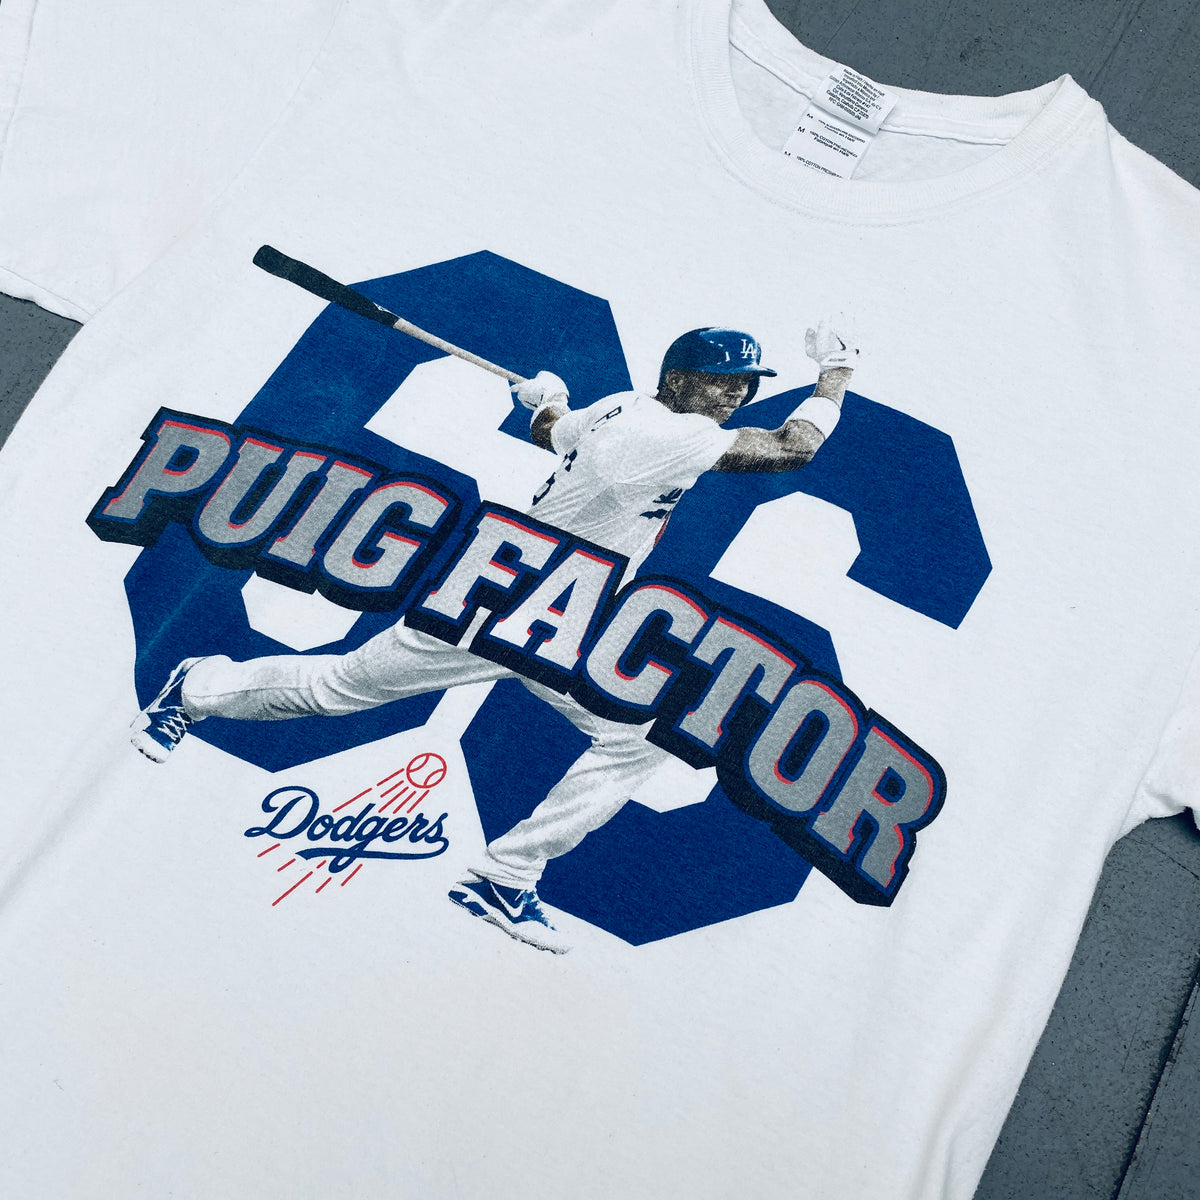 LA Dodgers Puig Shirt